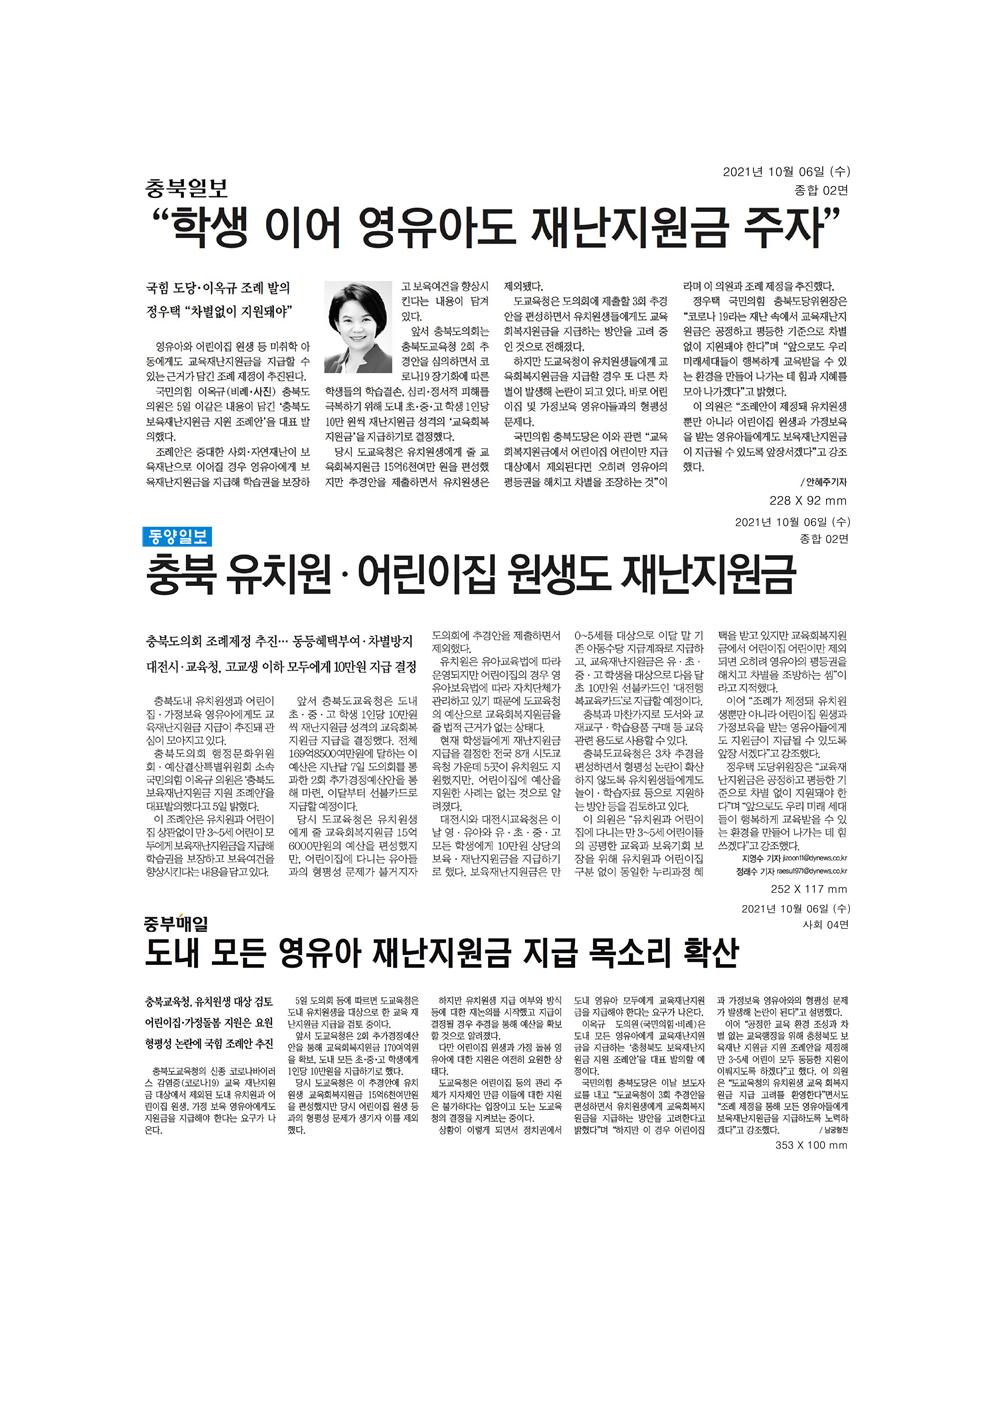 이옥규의원 교육재난지원금 조례발의 신문보도 - 1